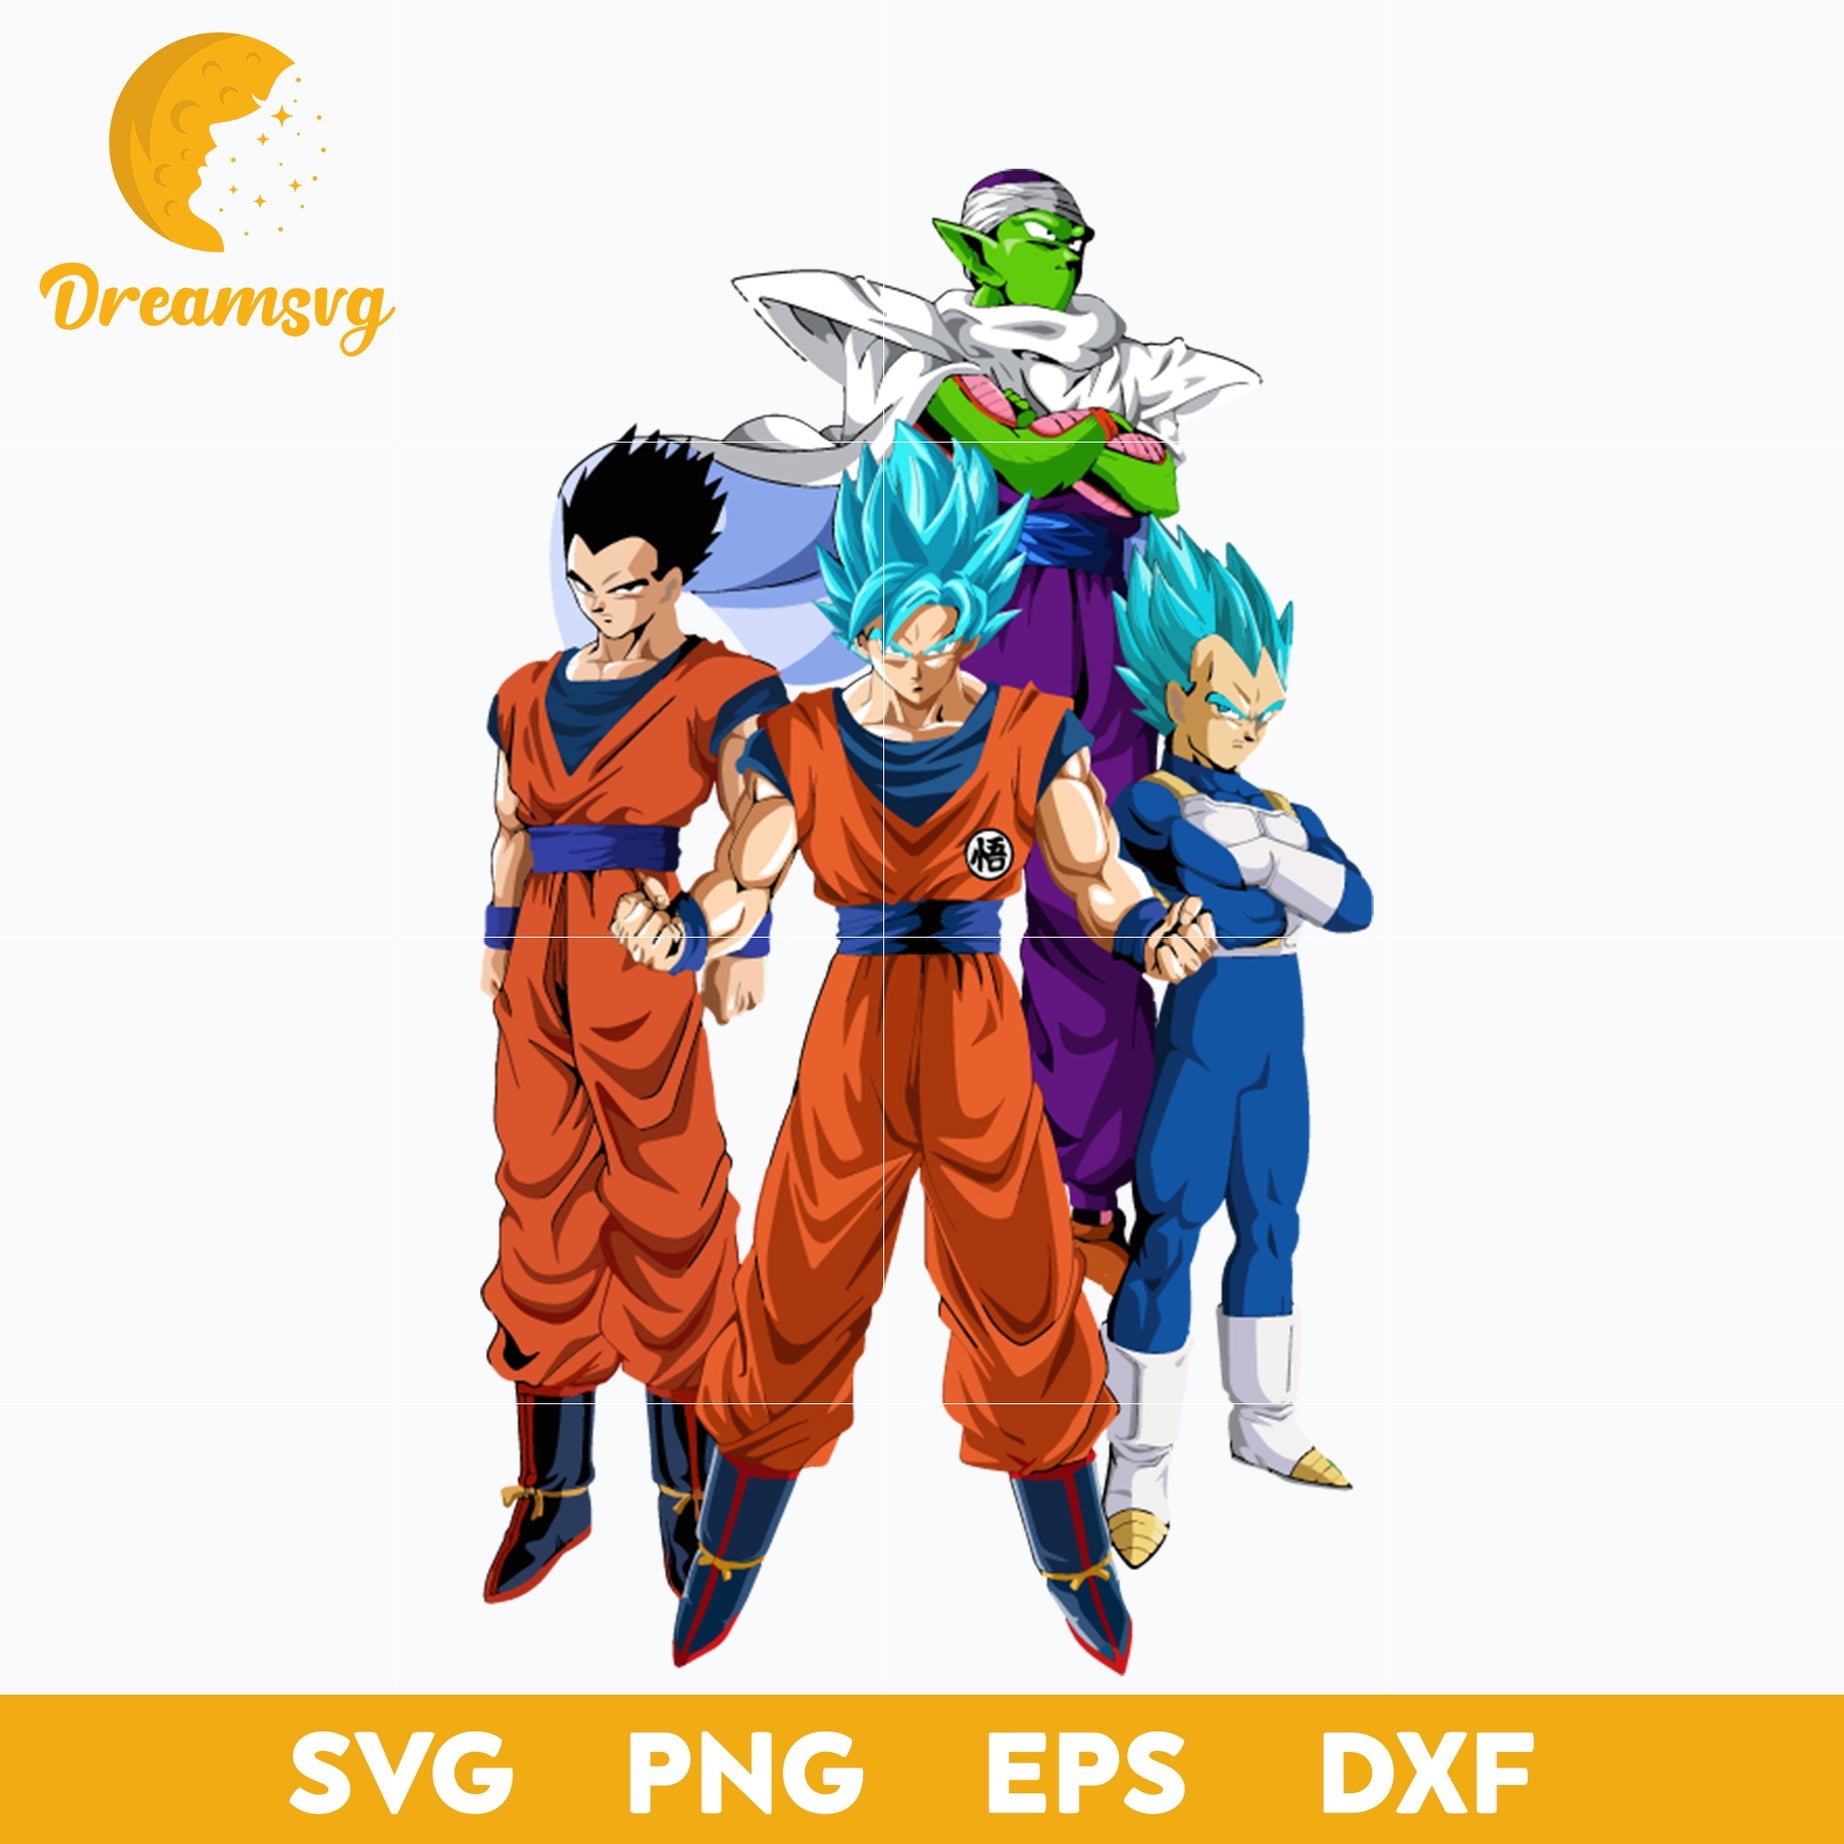 Dragon Ball Z Svg, Goku Svg, Vegeta Svg, Gohan Svg, Piccolo Svg, file for cricut, Anime svg, png, eps, dxf digital download